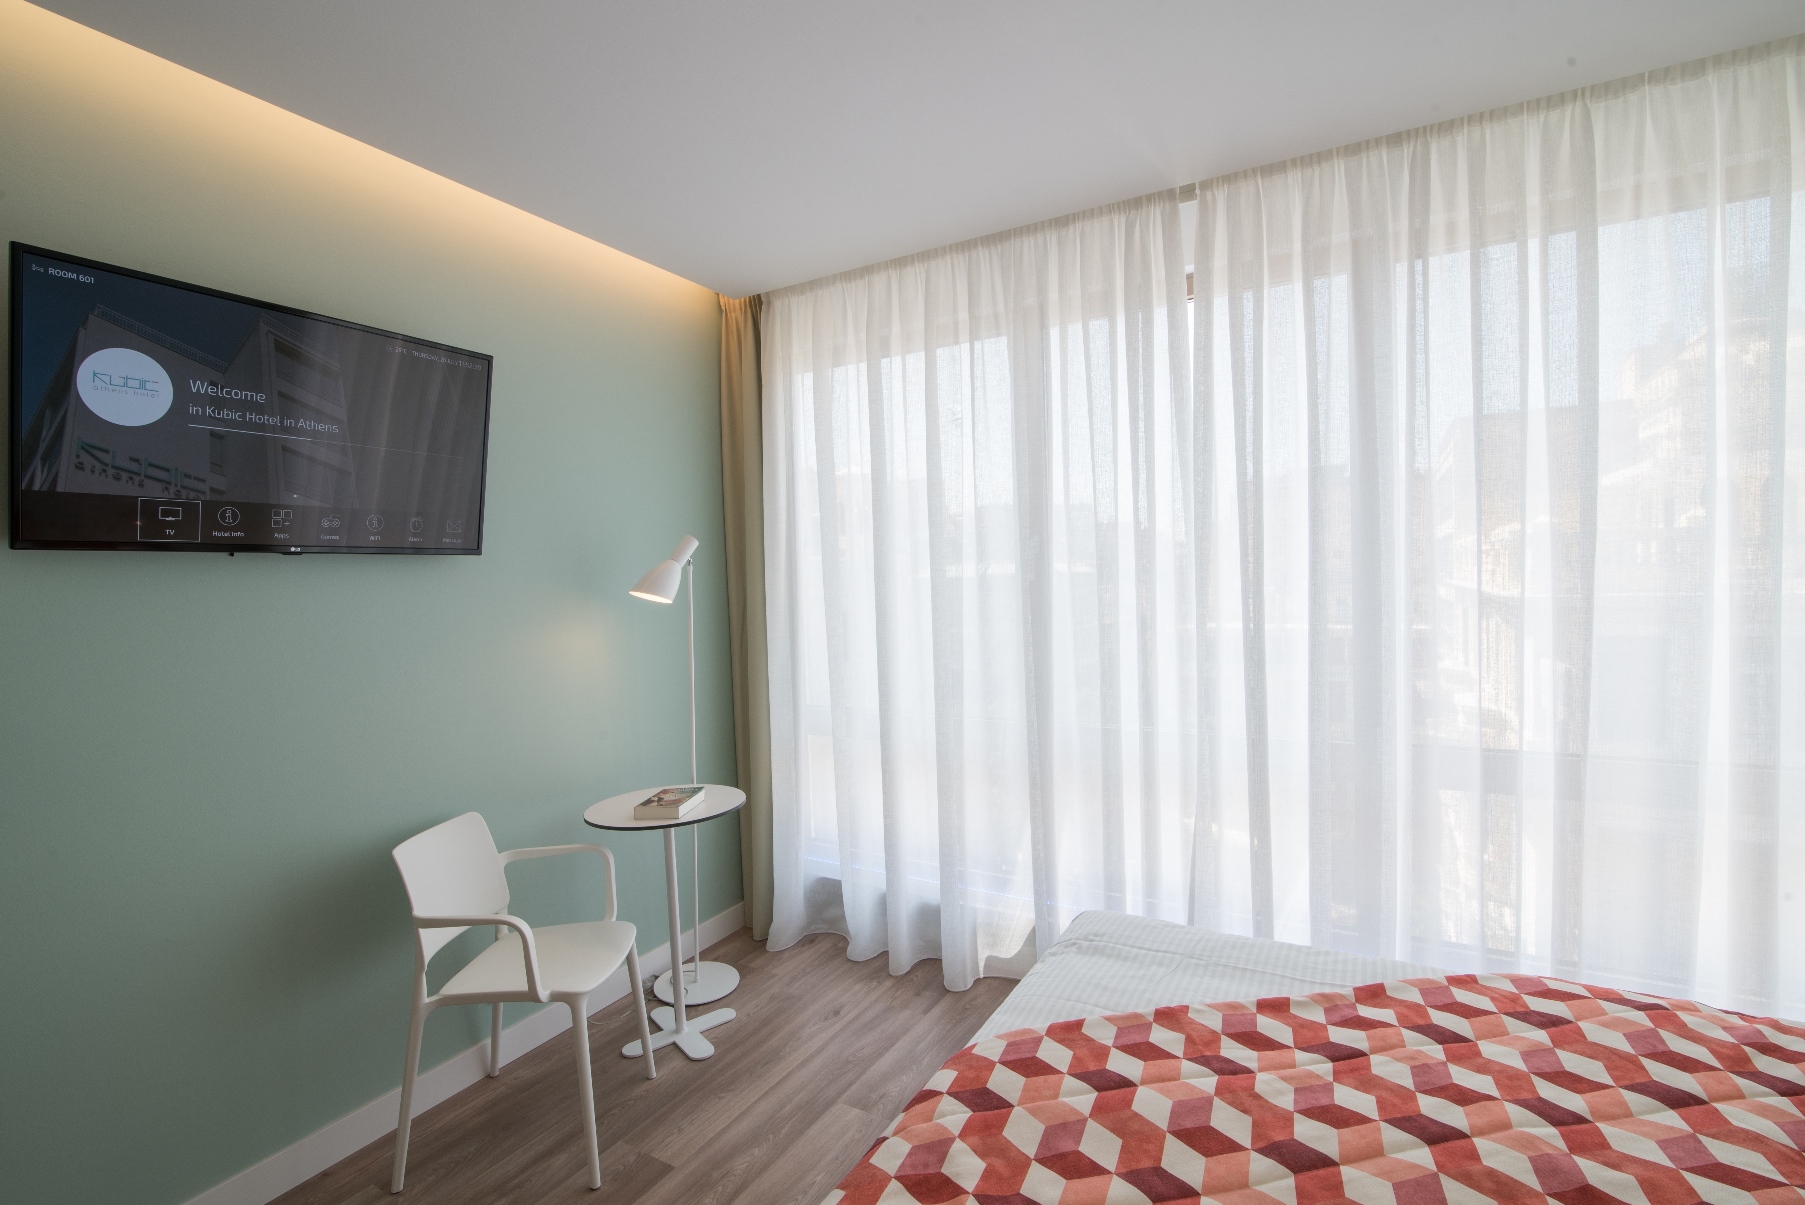 Το Kubic Athens Hotel επέλεξε LG Pro:Centric Smart τηλεοράσεις - ΧΡΗΜΑ